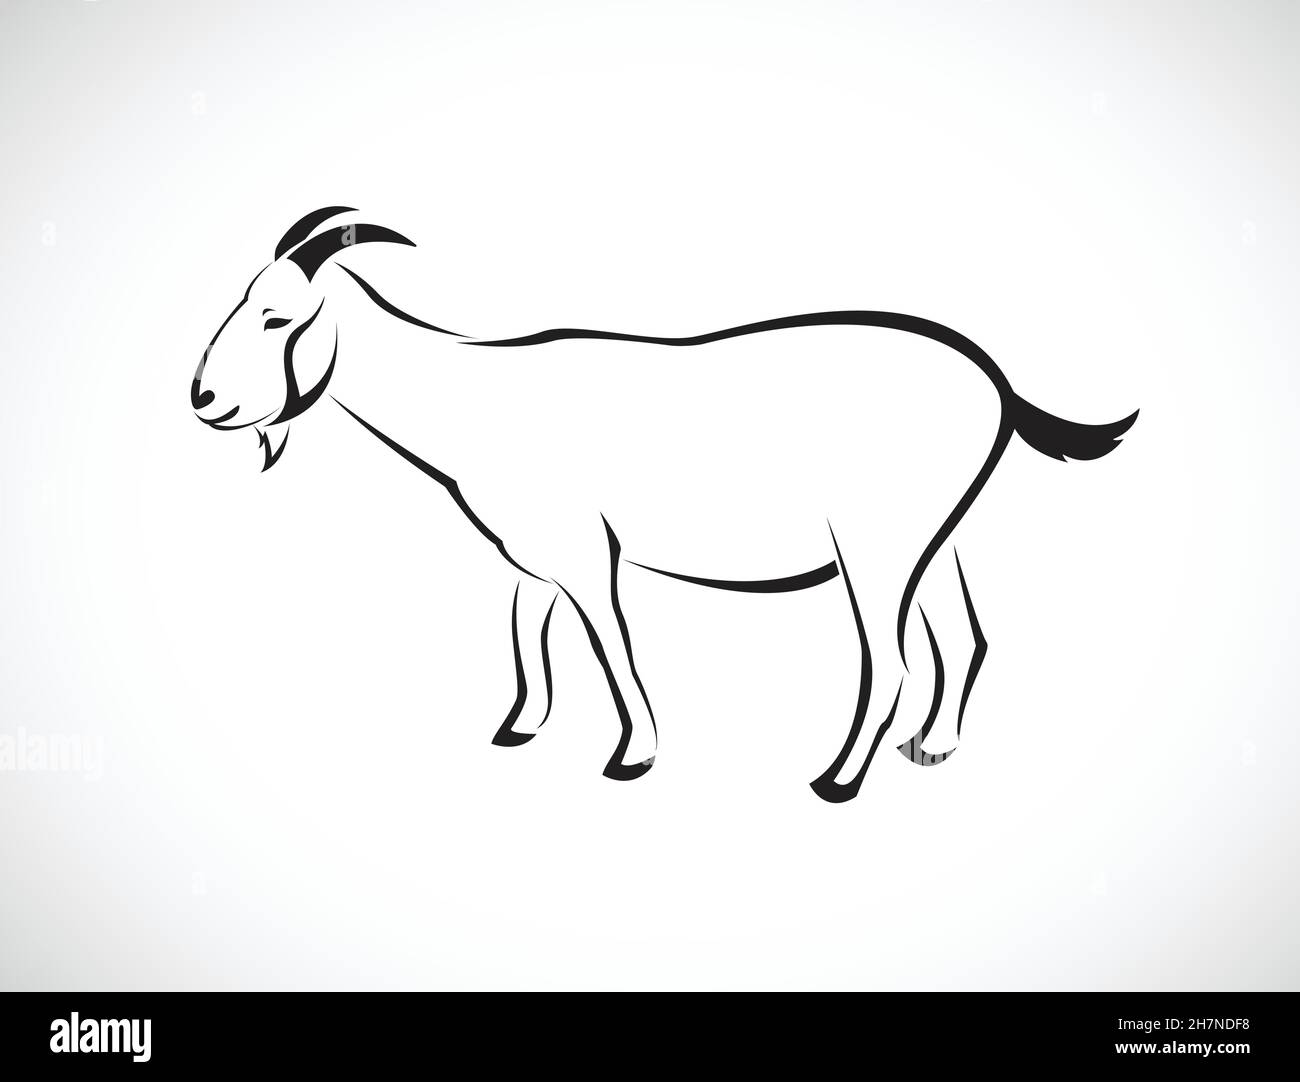 Vecteur d'une chèvre sur fond blanc.Illustration vectorielle superposée facile à modifier.Animaux sauvages. Illustration de Vecteur